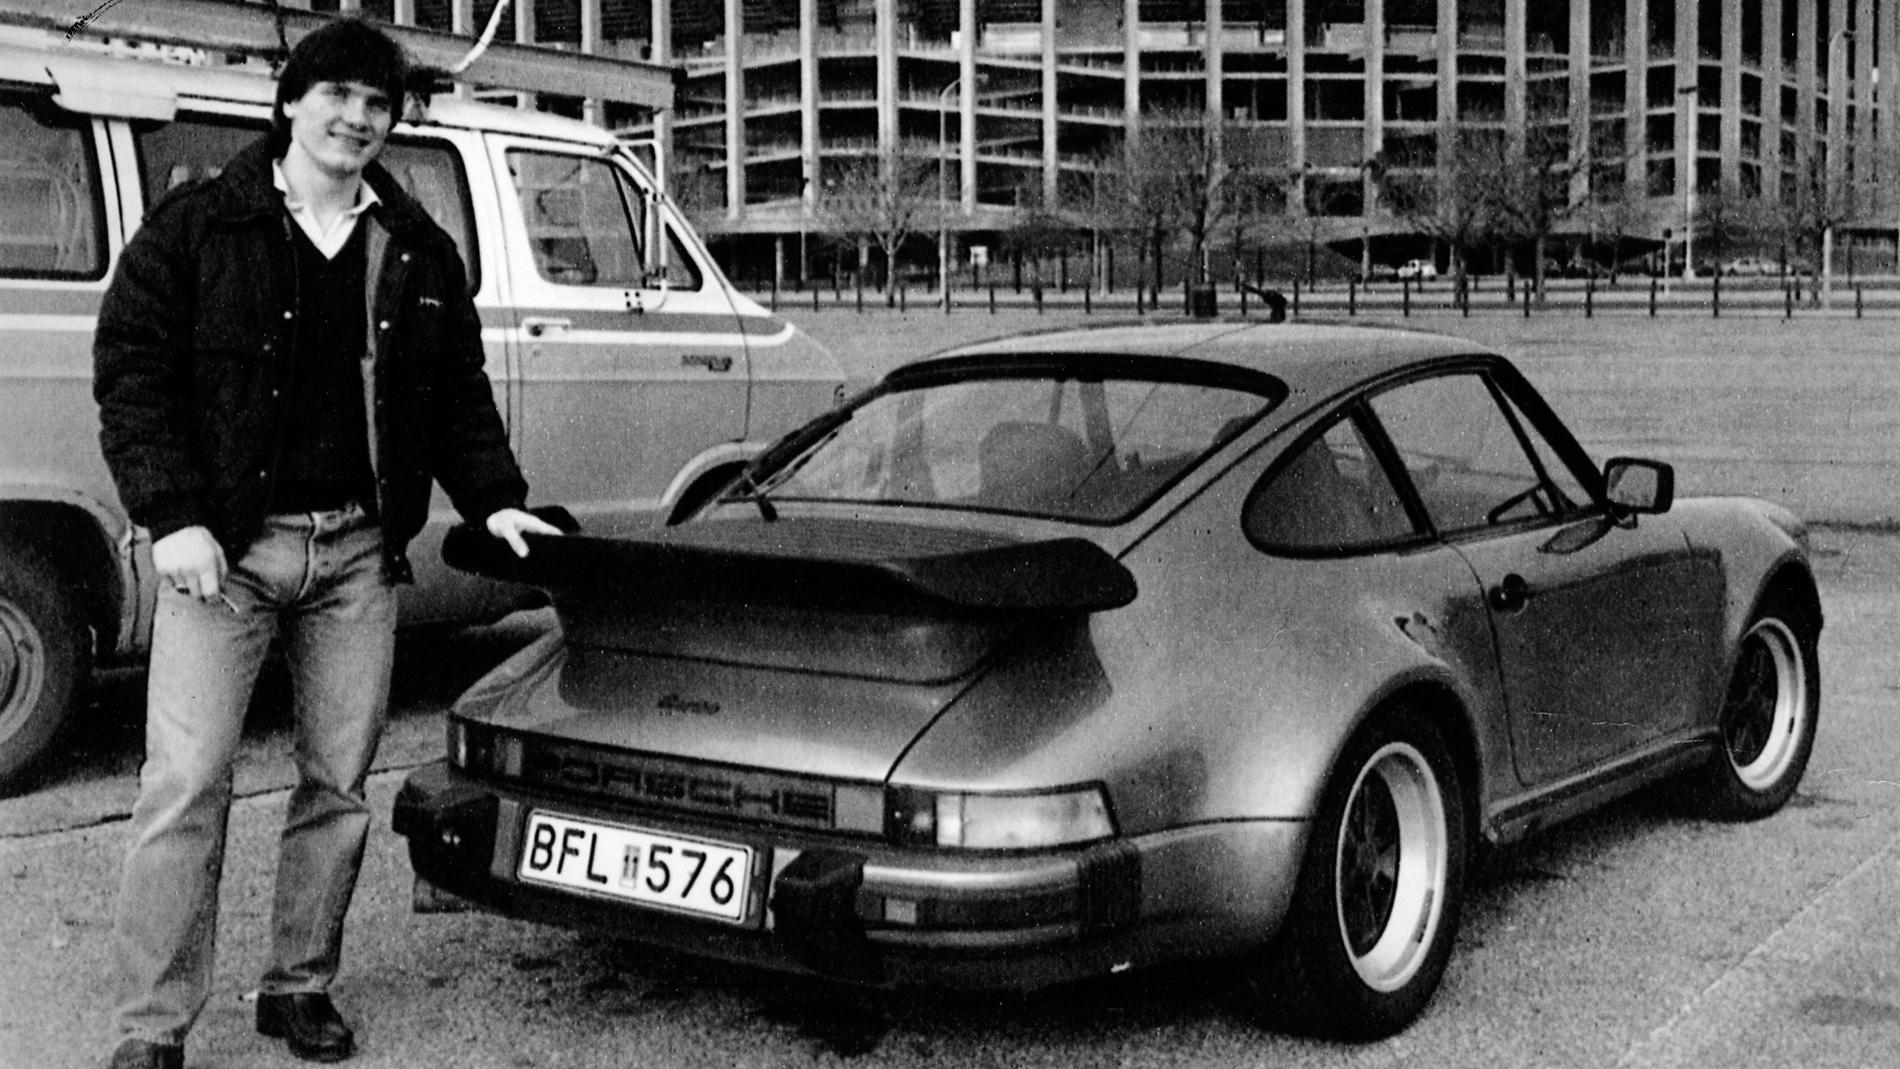 Pelle med sin Porsche 911 Turbo utanför Flyers hemmaarena.